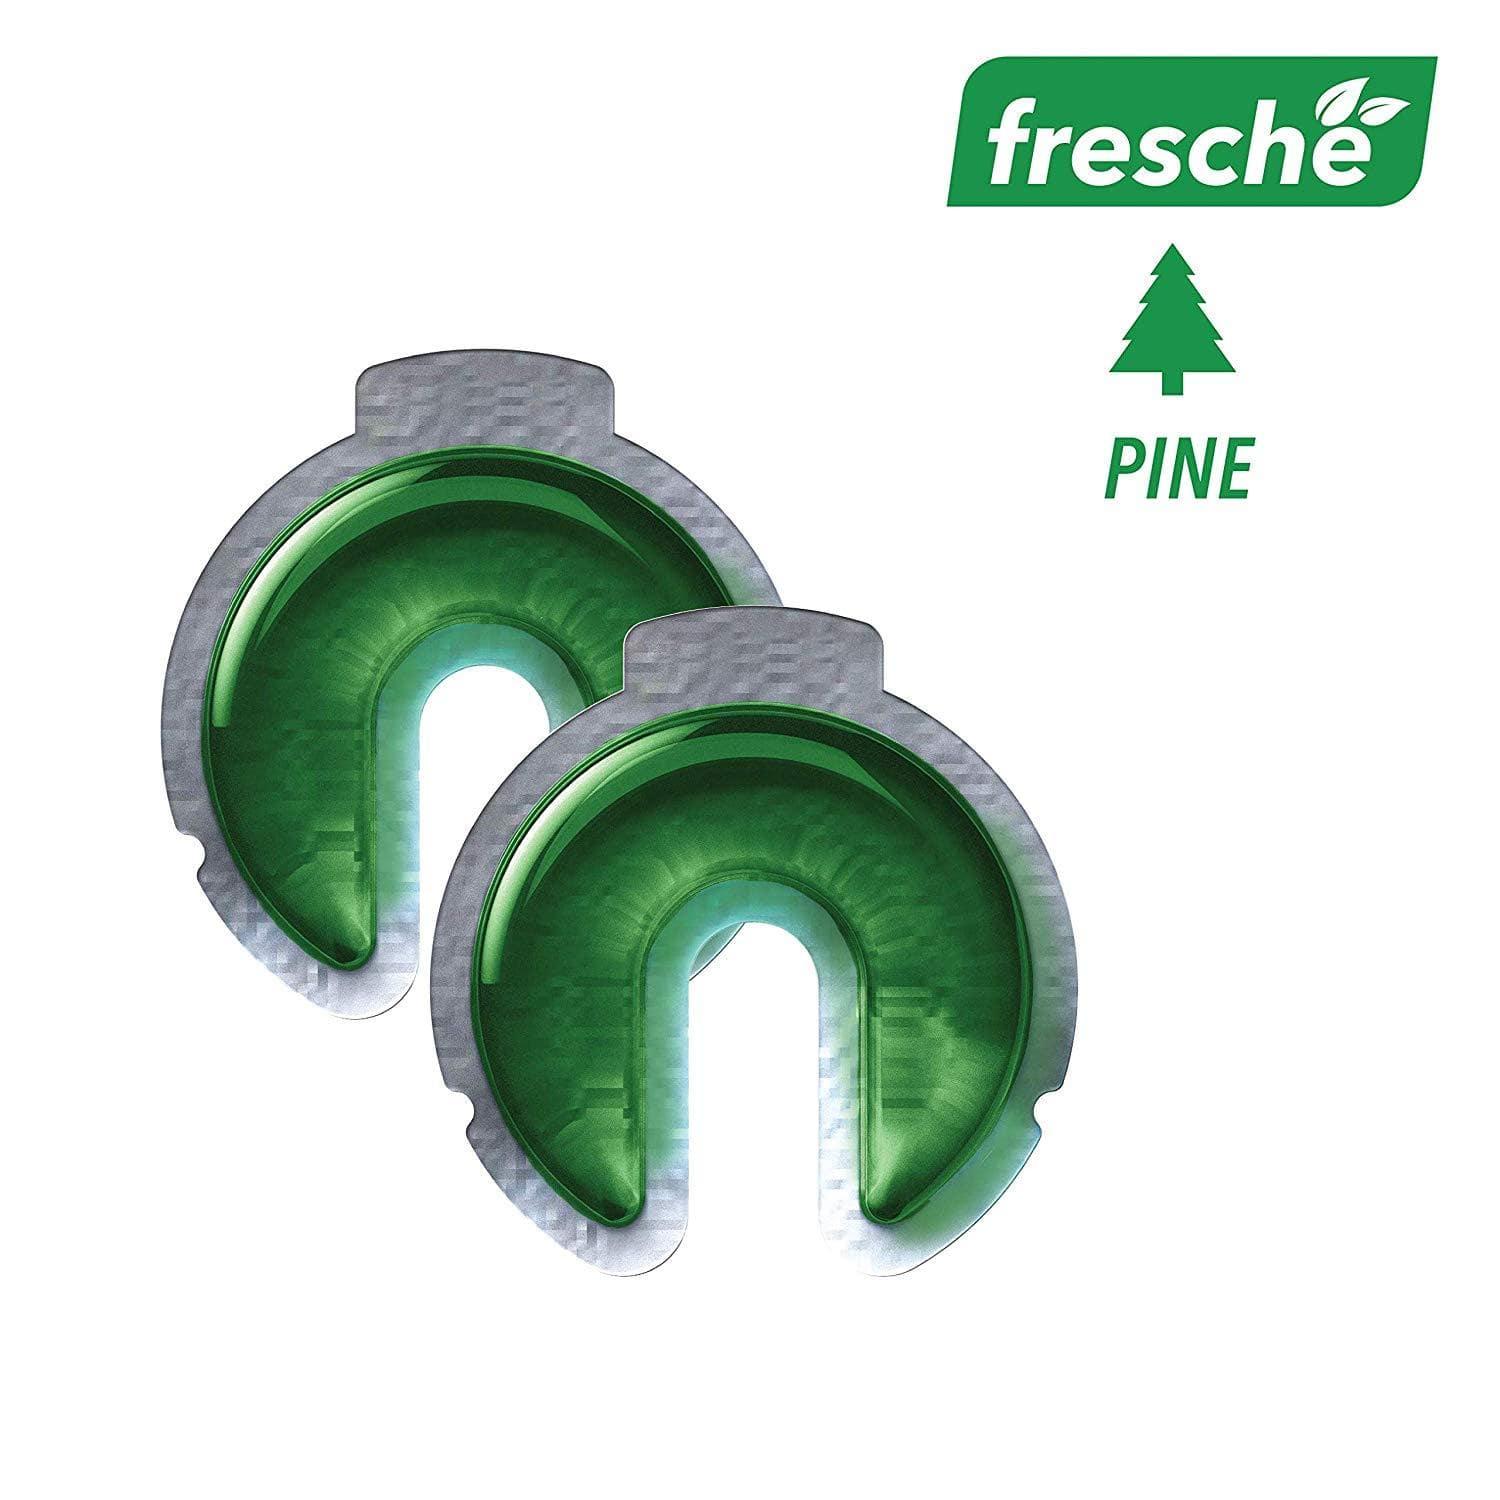 جهاز معطر الهواء لحامل الهاتف Scosche - Air Freshener Refill Cartridges for Fresche Mounts - صنوبر